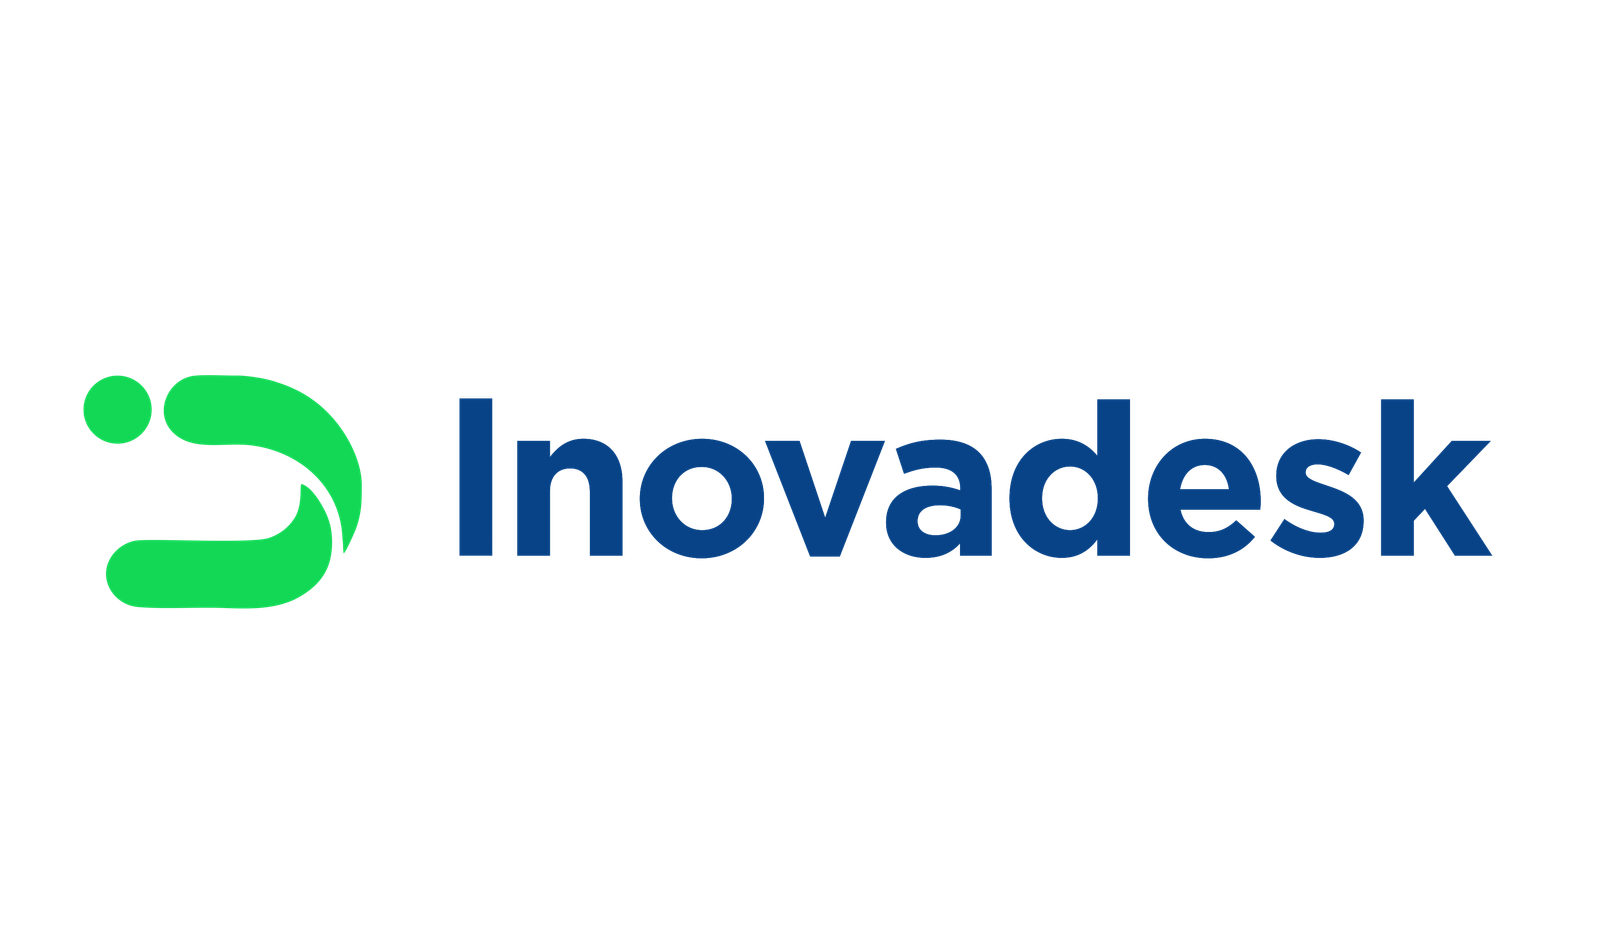 Inovadesk